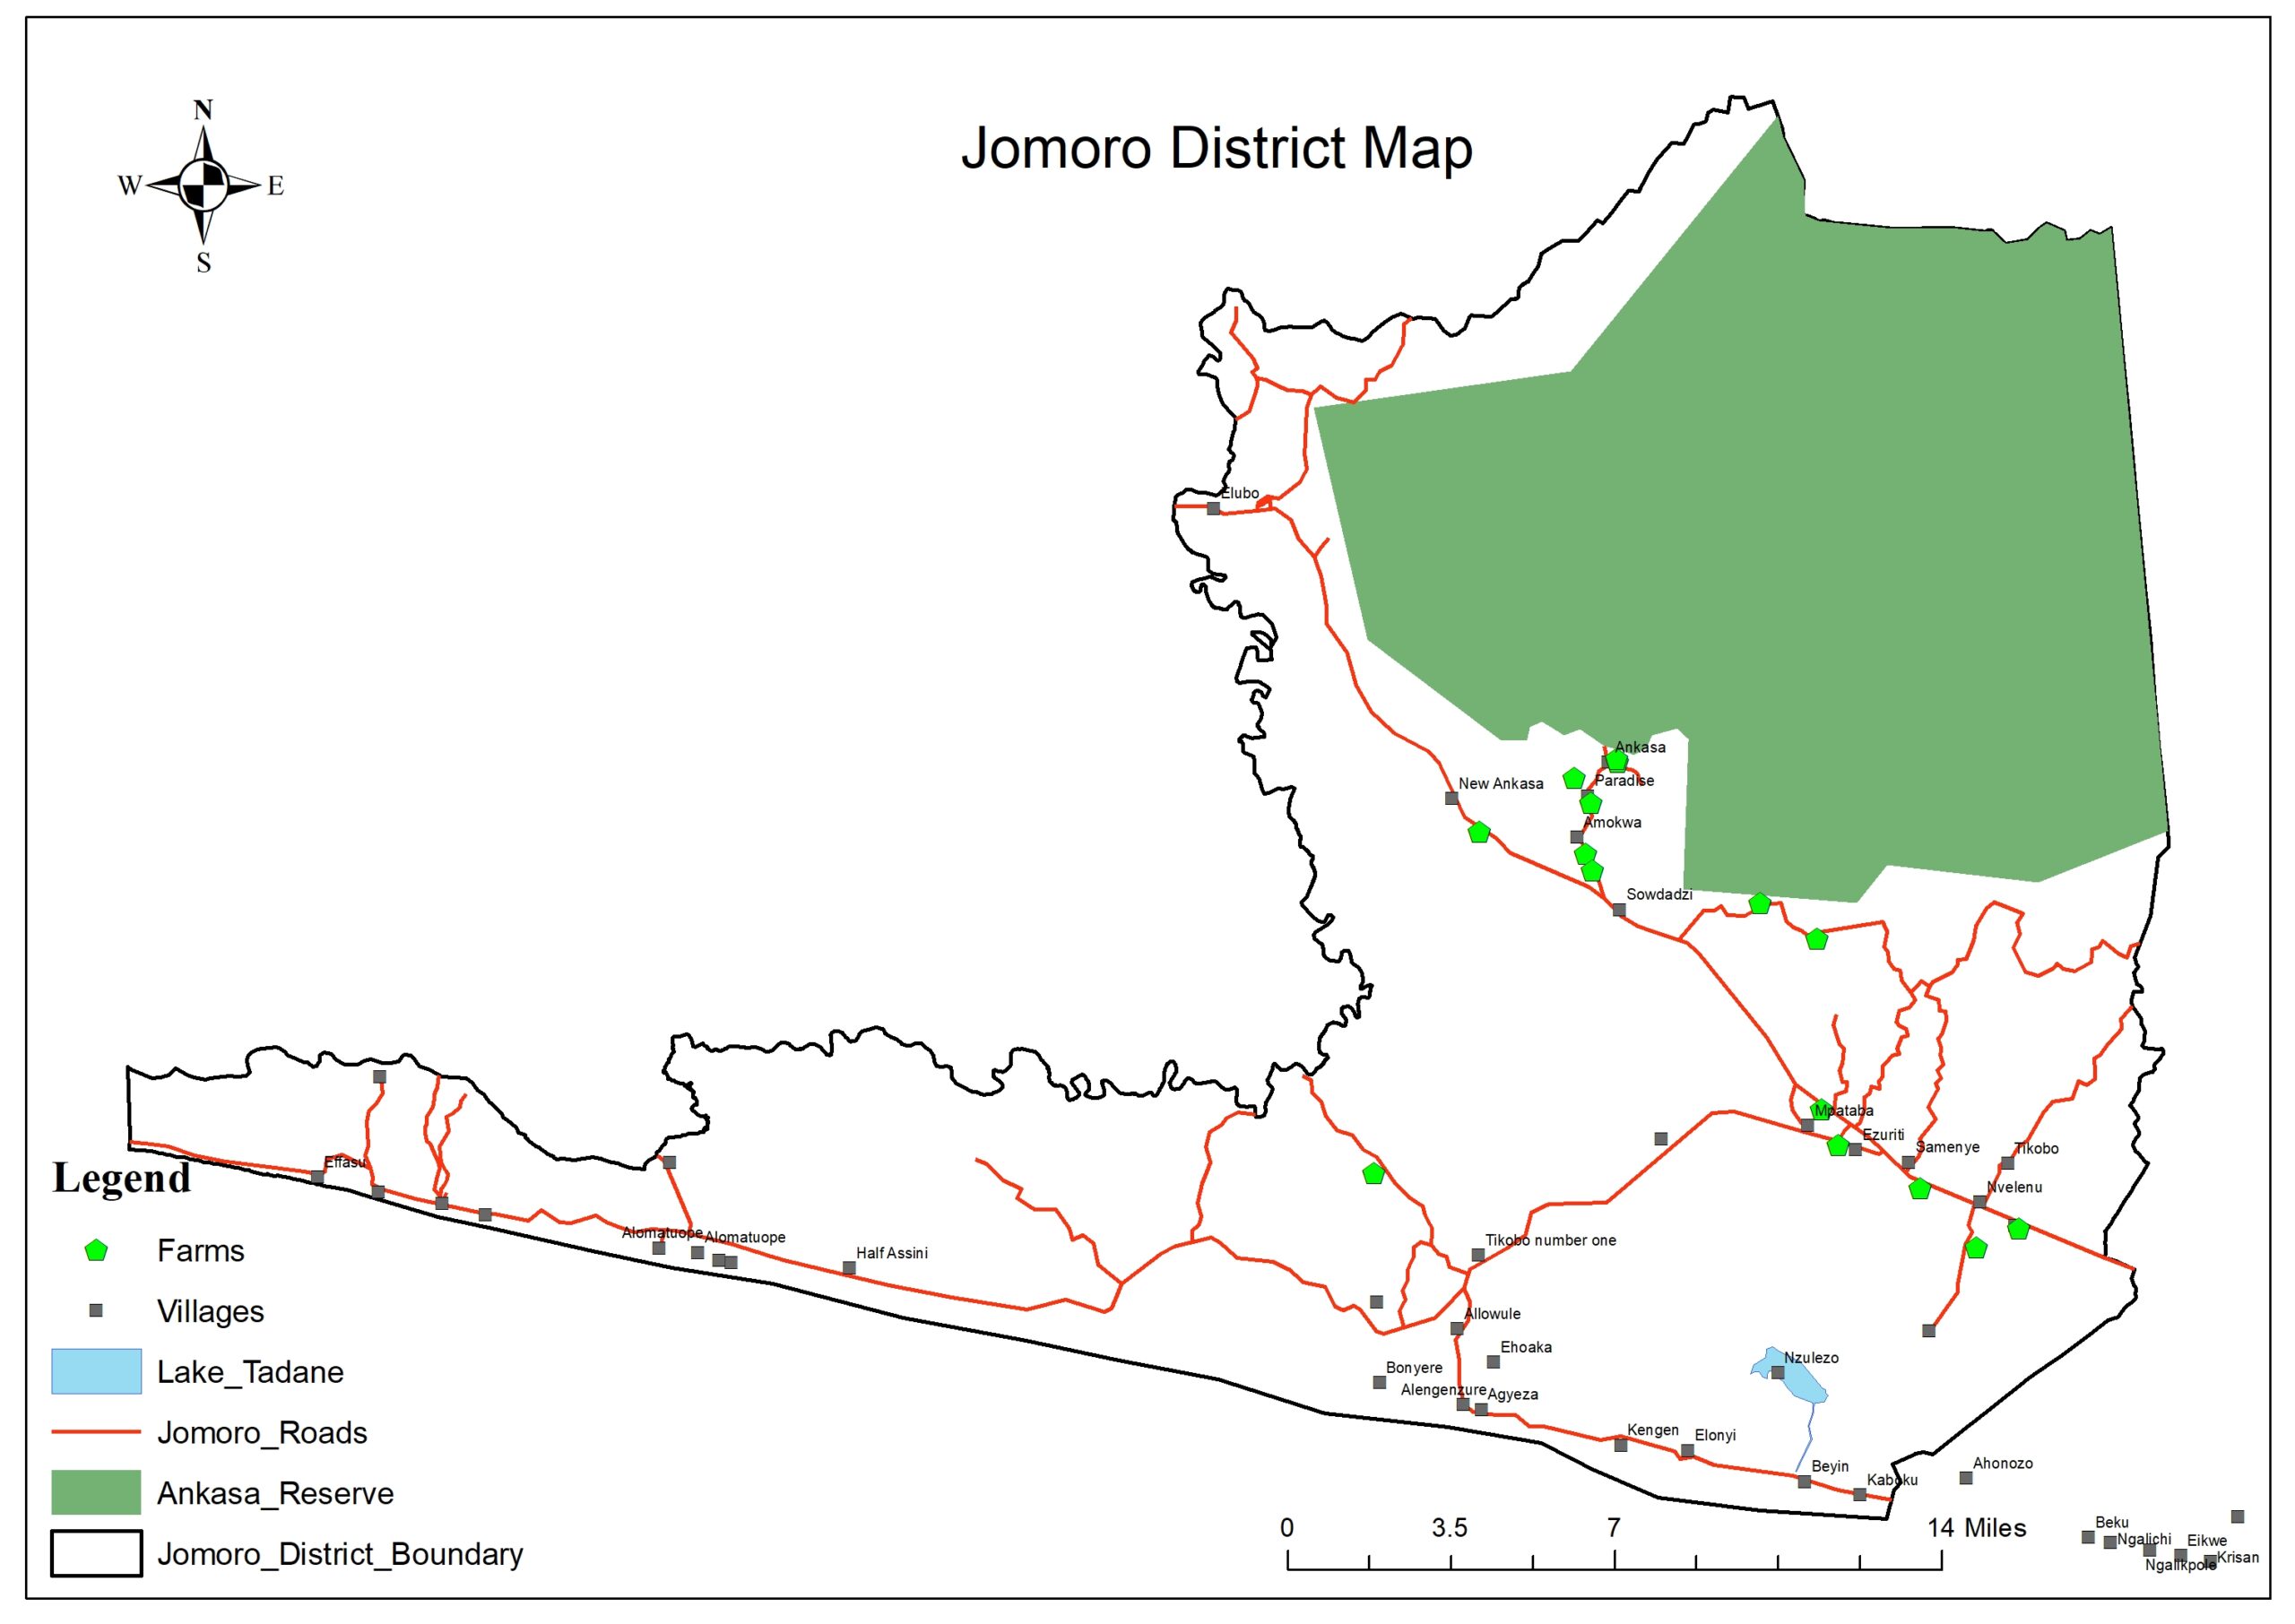 Jomoro District Map (plain)